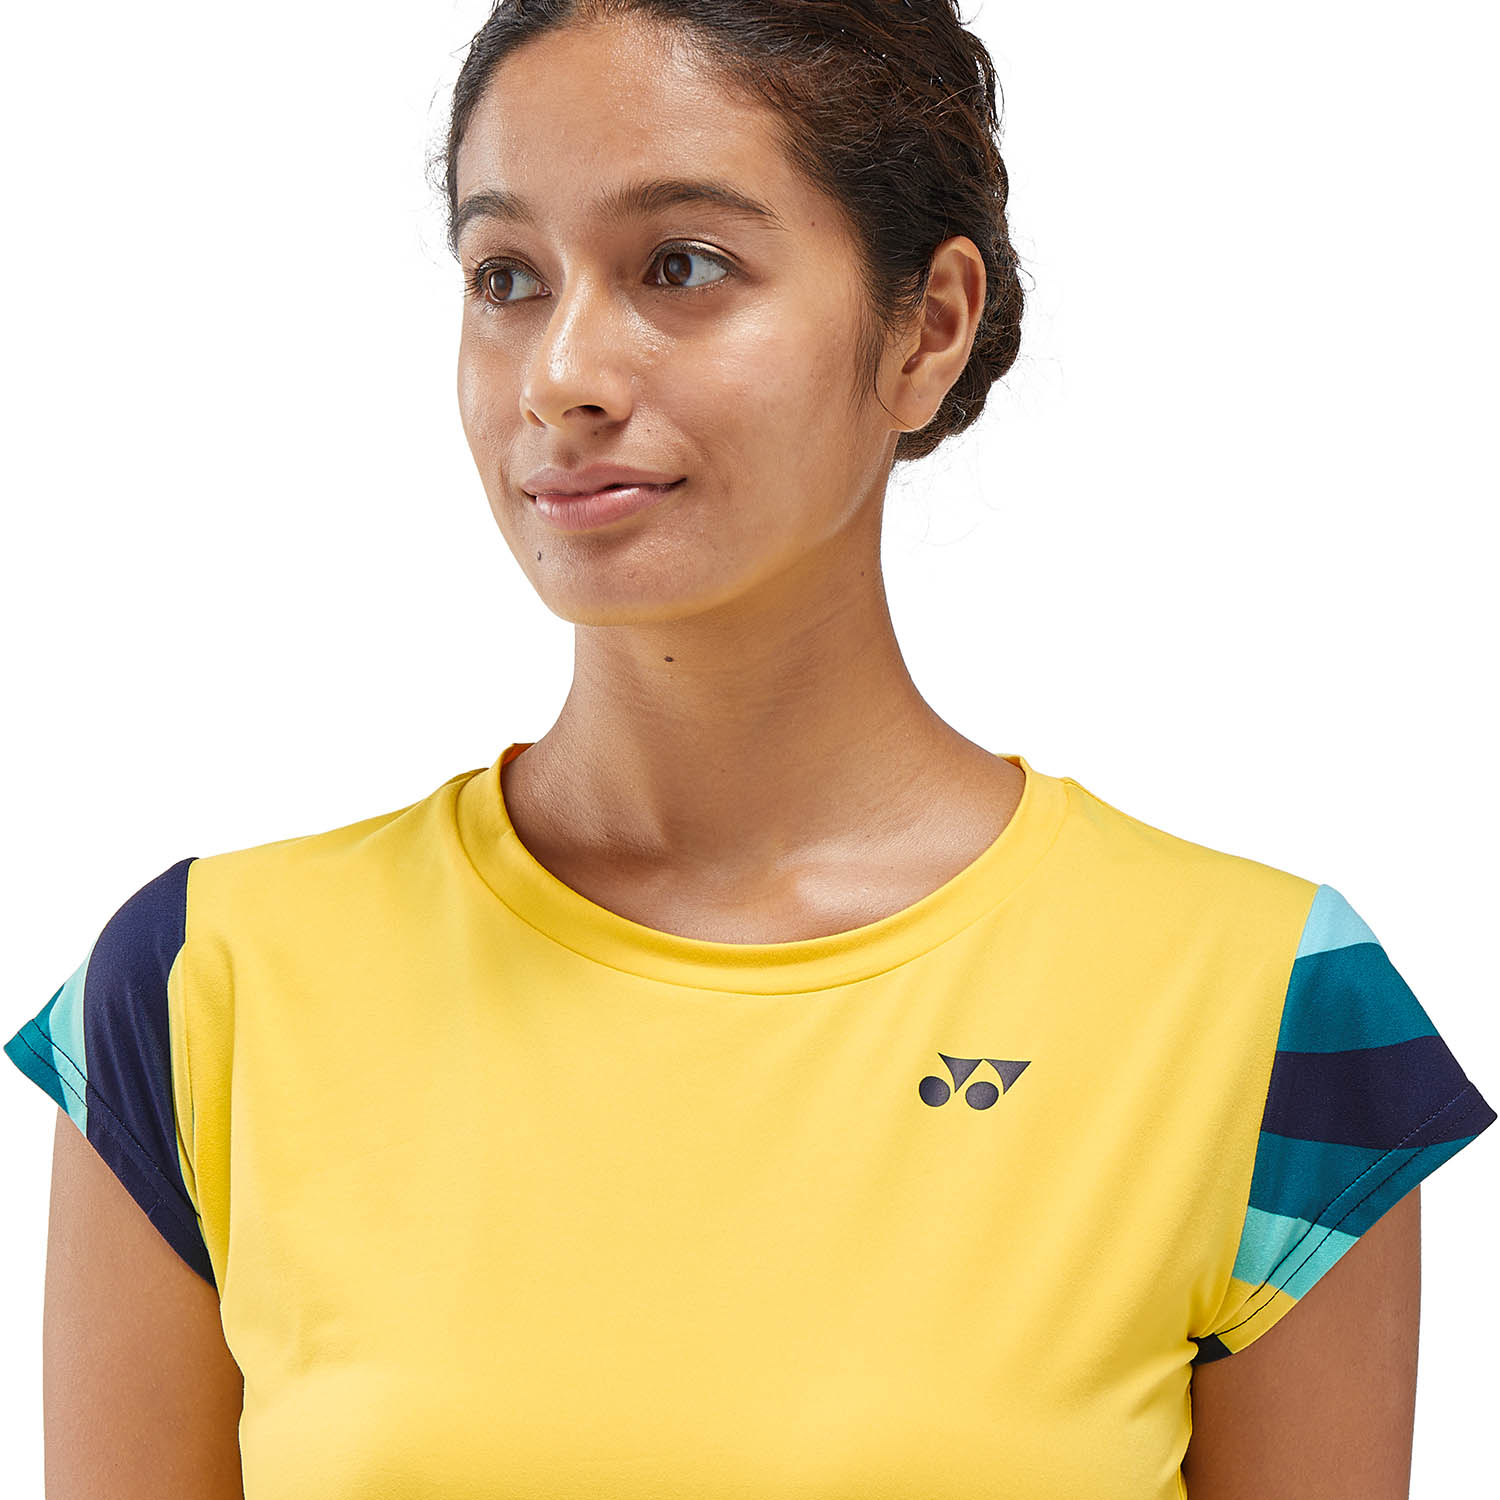 Yonex Melbourne Camiseta - Soft Yellow